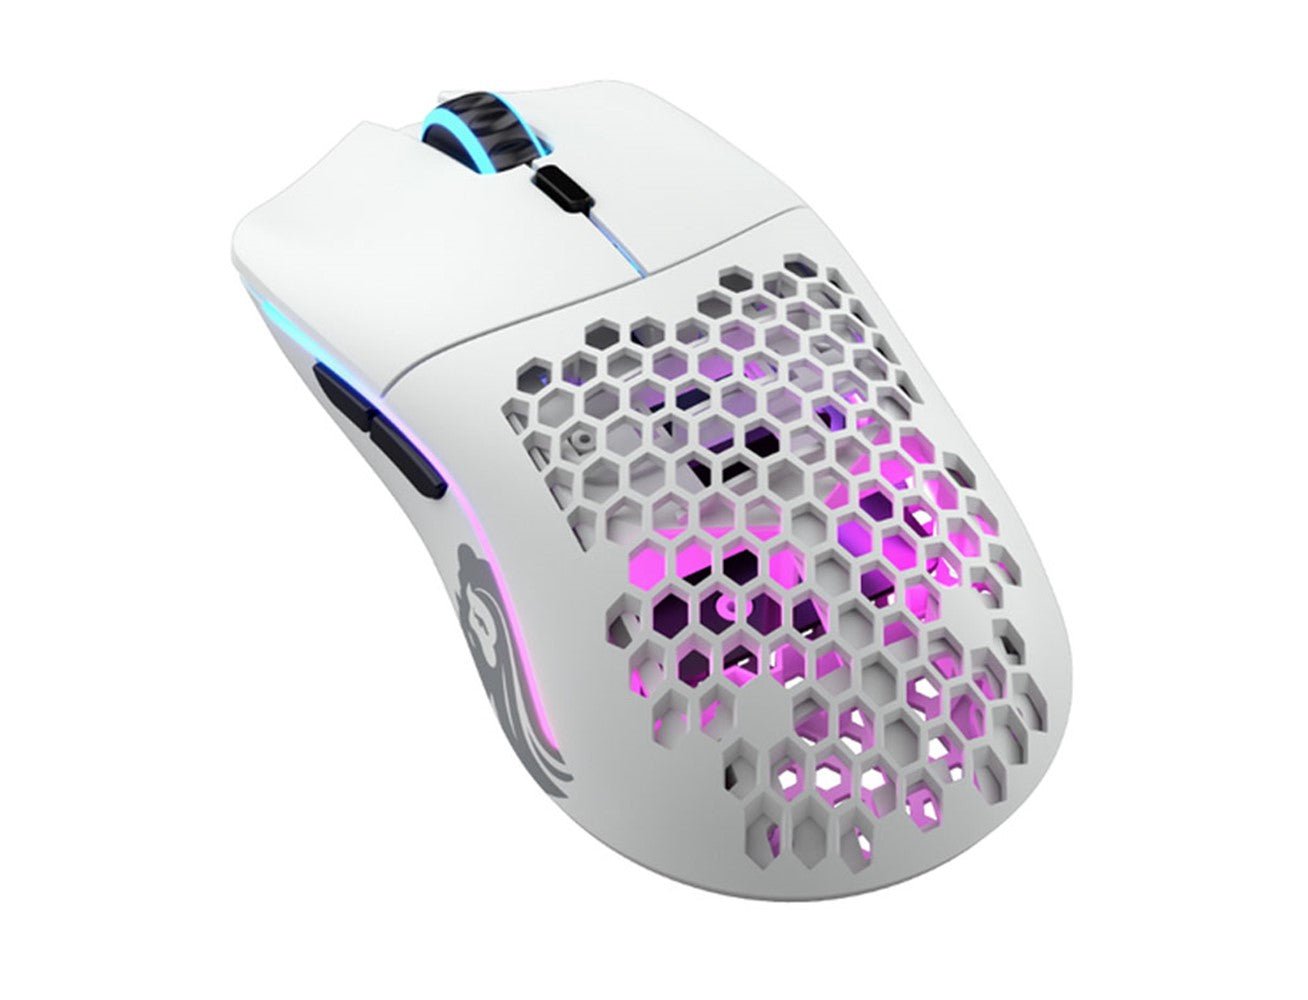 Glorious Model O Minus Wireless Mouse - Matte White